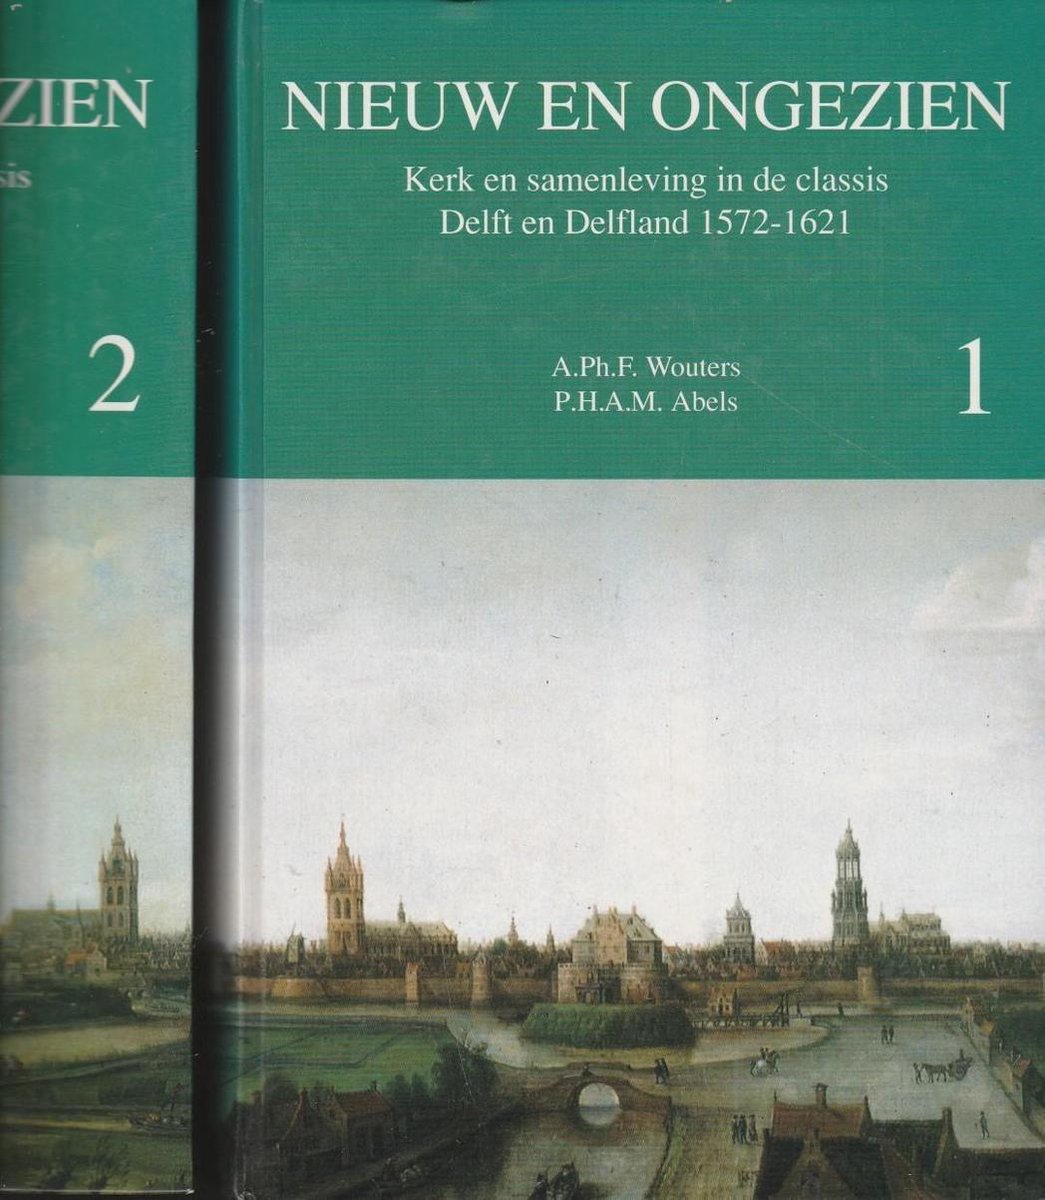 Nieuw en ongezien / Boek 1 De nieuwe kerk / Werken van de Vereniging voor Nederlandse Kerkgeschiedenis / 1